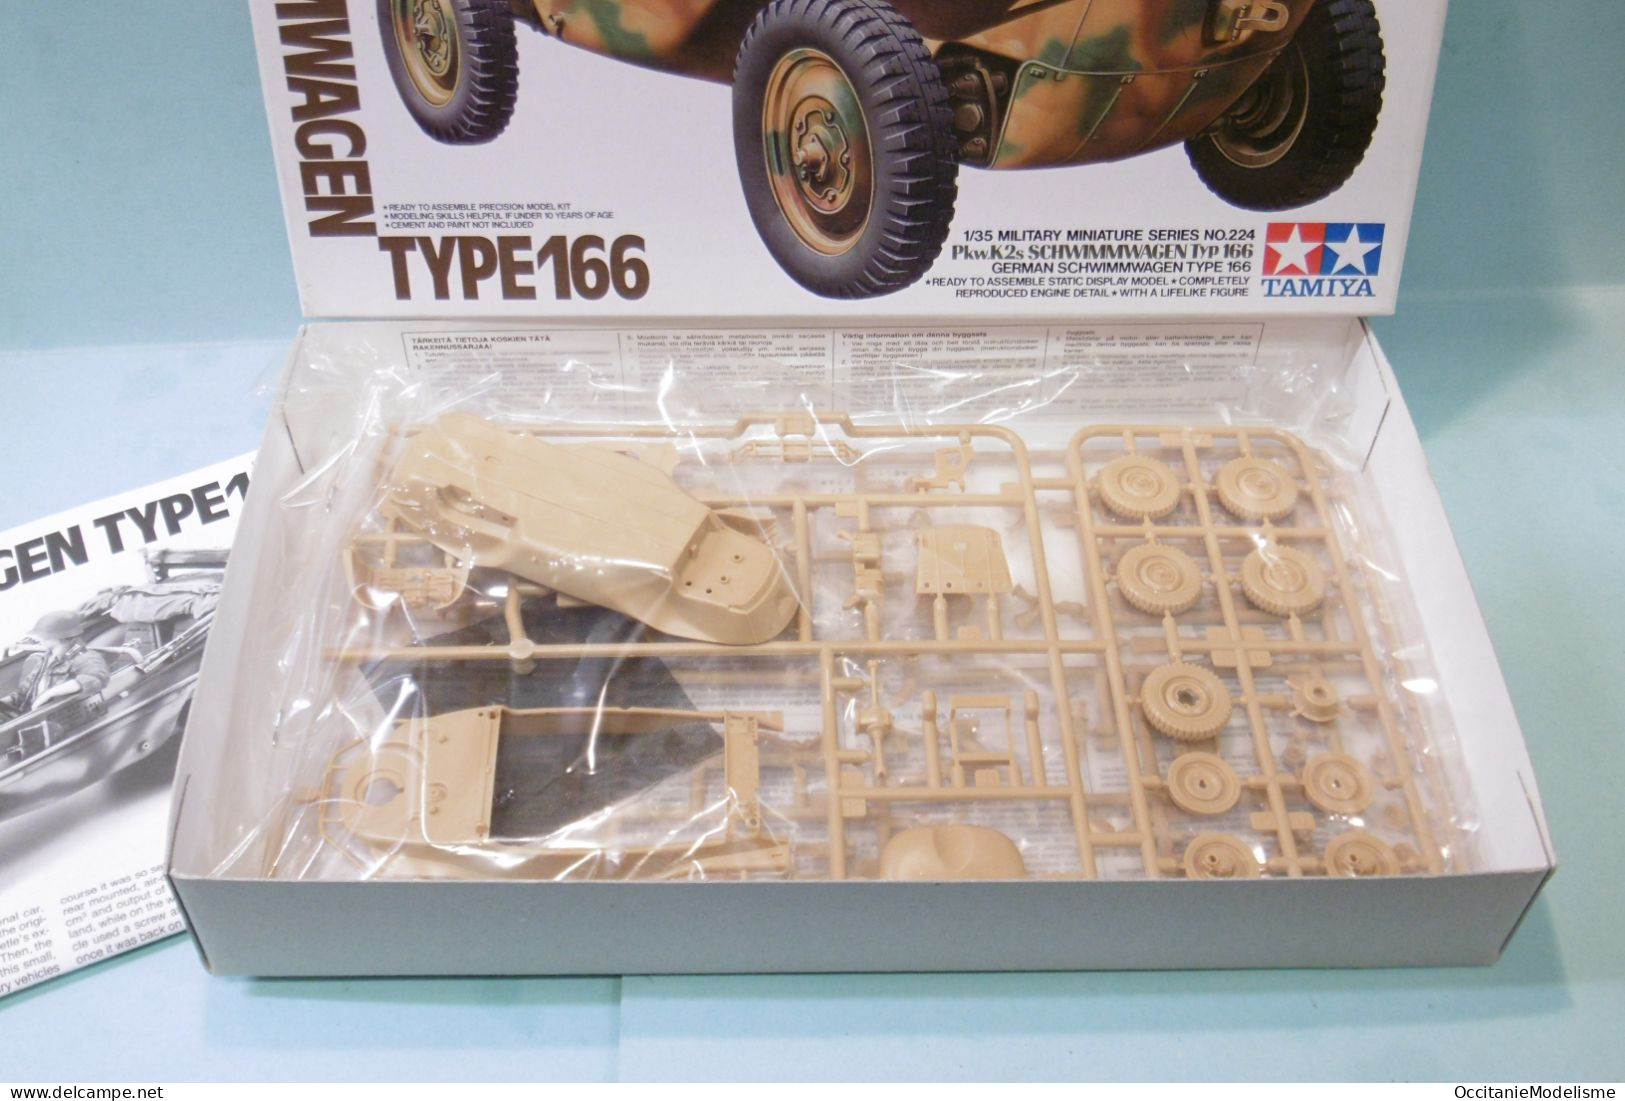 Tamiya - SCHWIMMWAGEN TYPE 166 Amphibie WWII Militaire Maquette Kit Plastique Réf. 35224 BO 1/35 - Militär